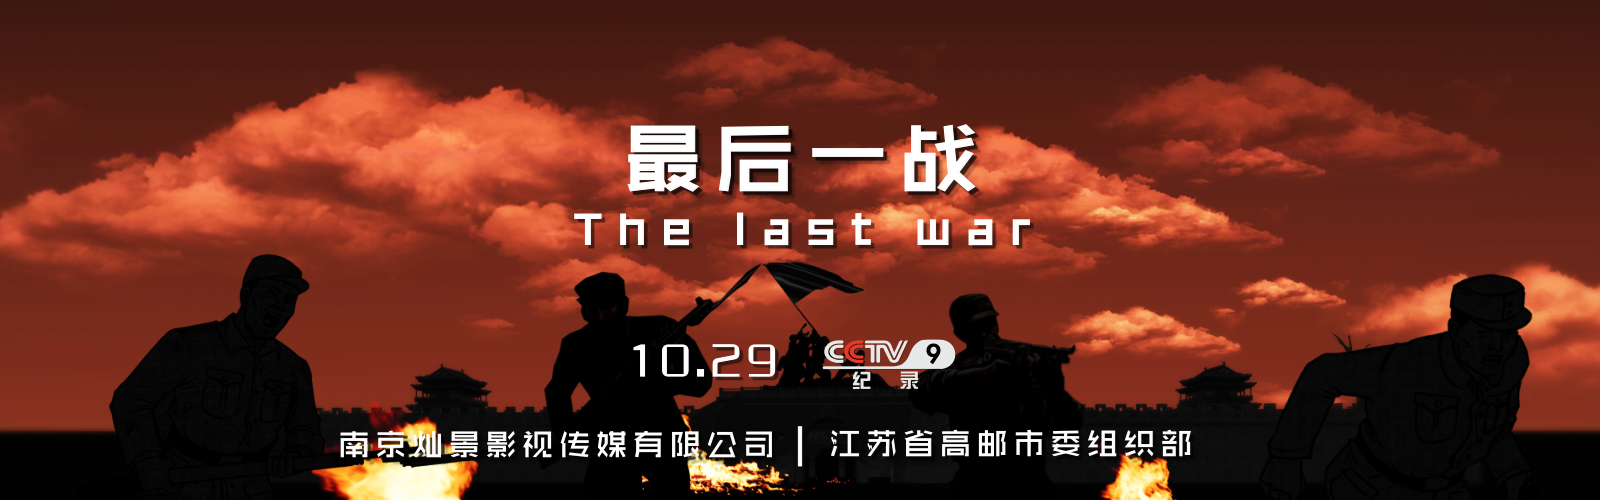 《最后一战》10月29日即将在央视9套播出